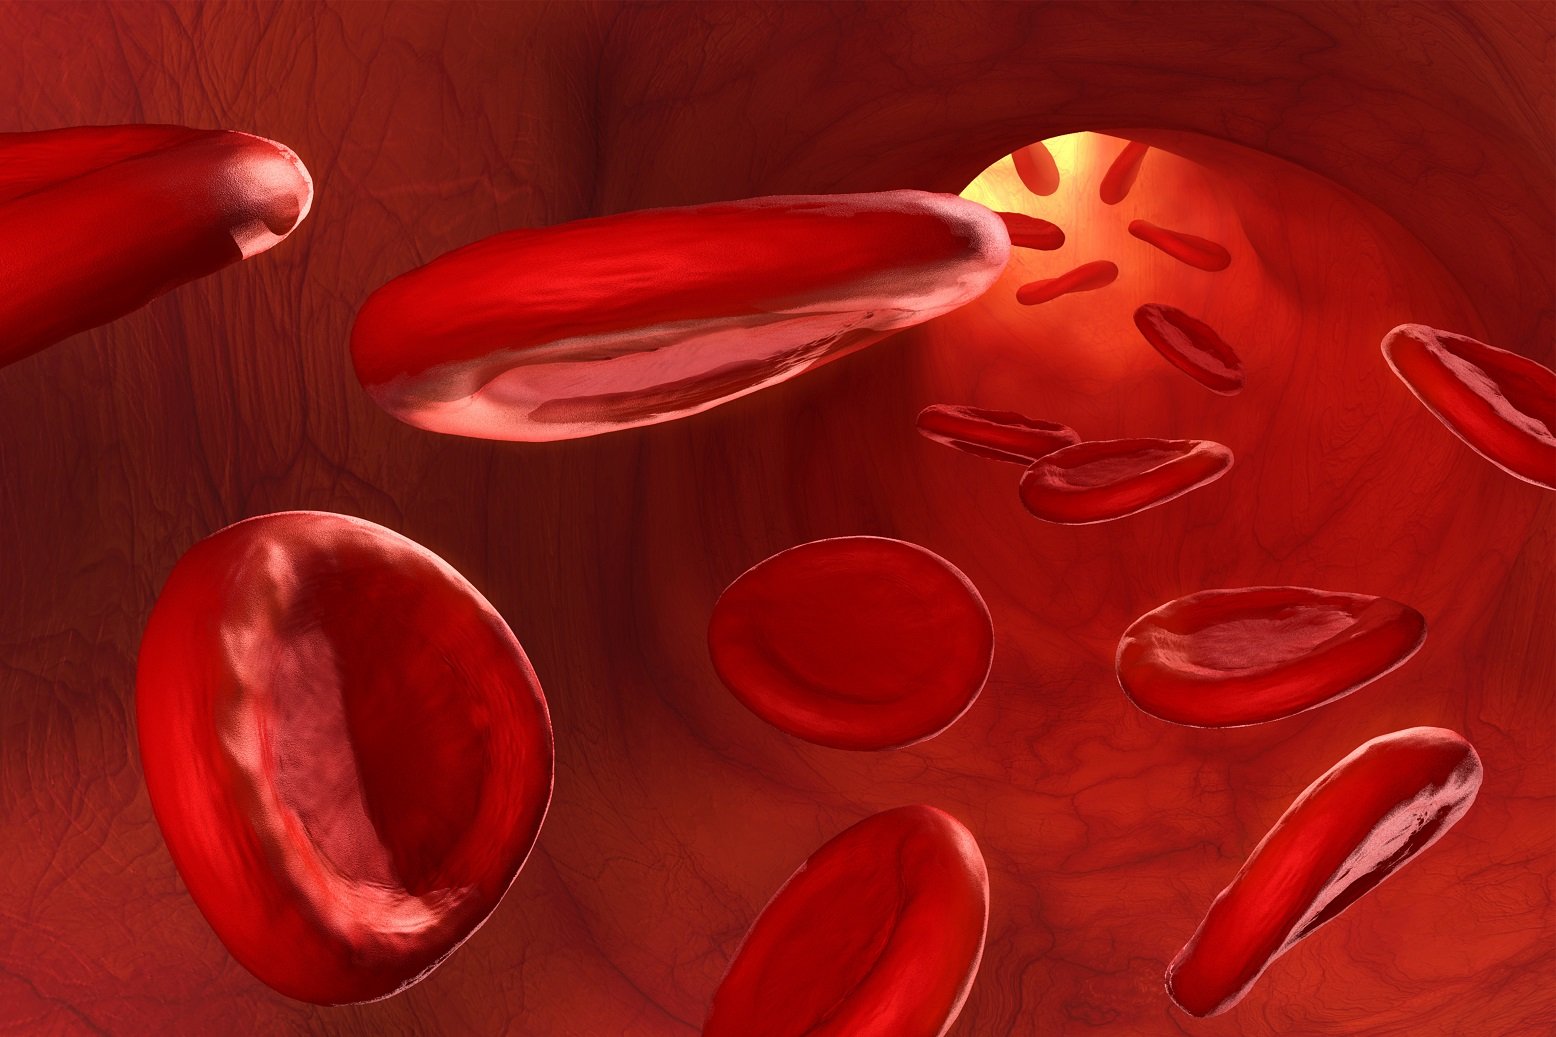 صورة جهاز الدوران الذي يدفع الدم مباشرة في انسجة الحيوان هو